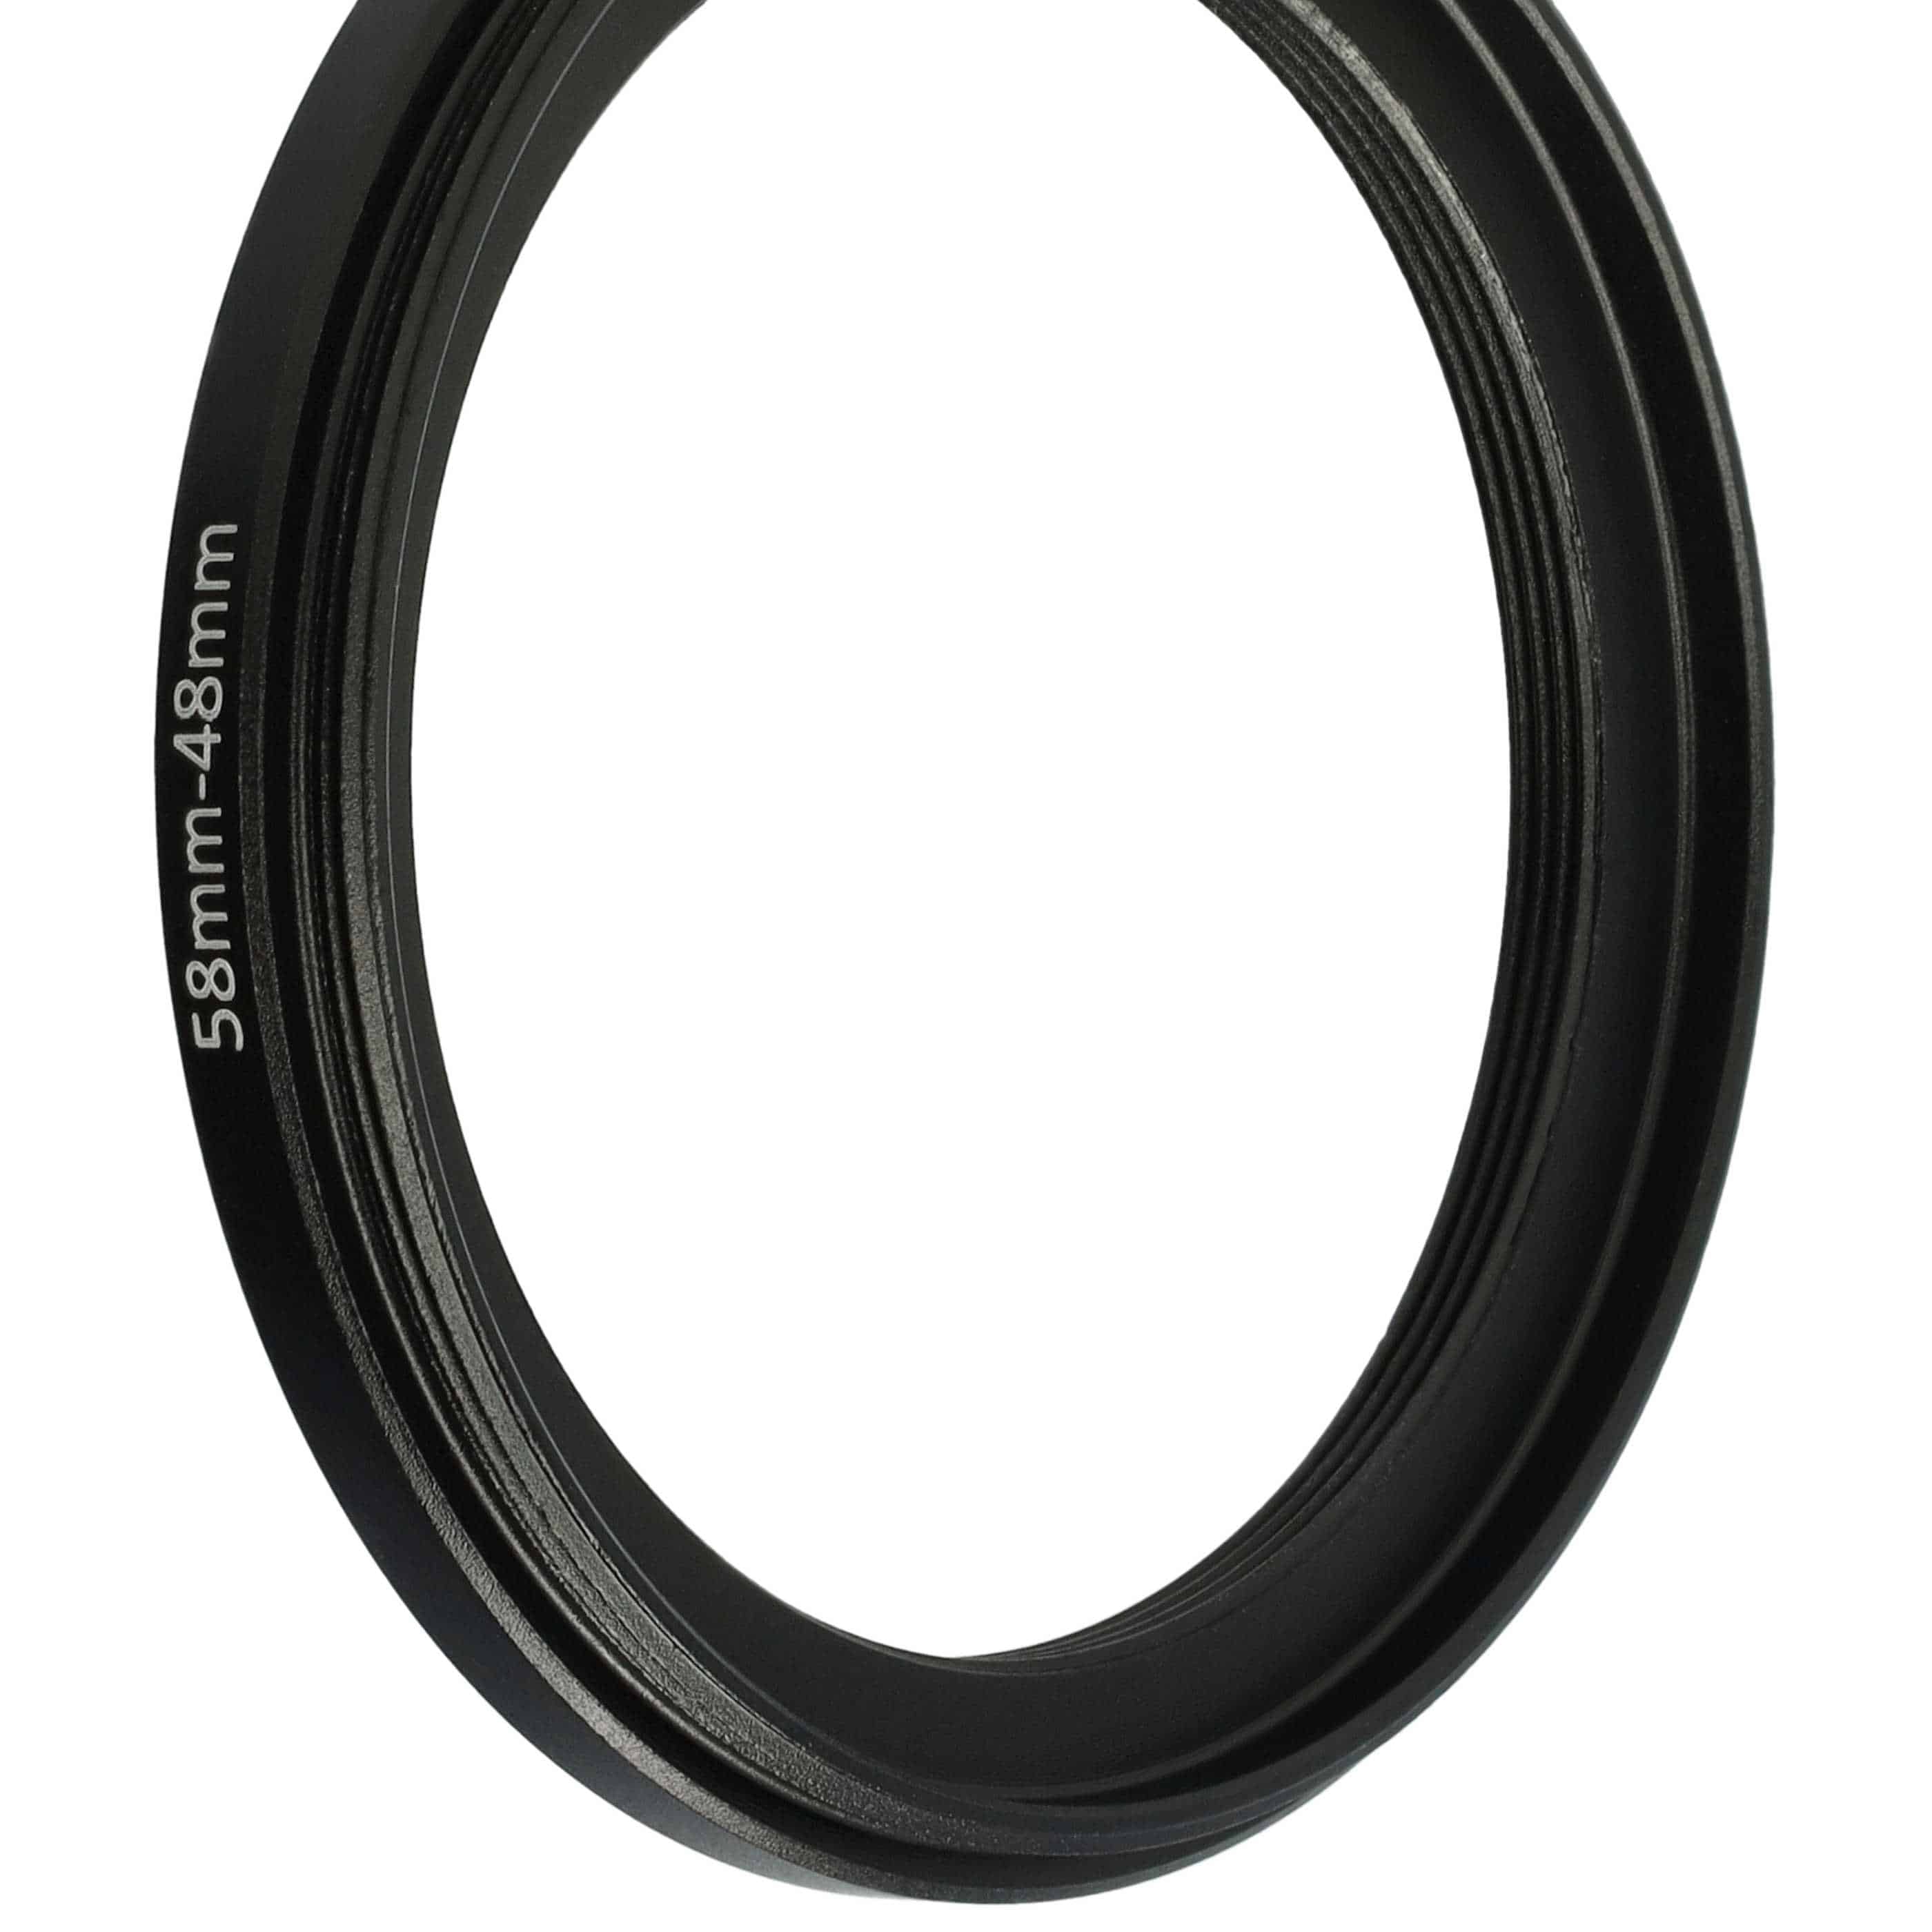 Anello adattatore step-down da 58 mm a 48 mm per obiettivo fotocamera - Adattatore filtro, metallo, nero